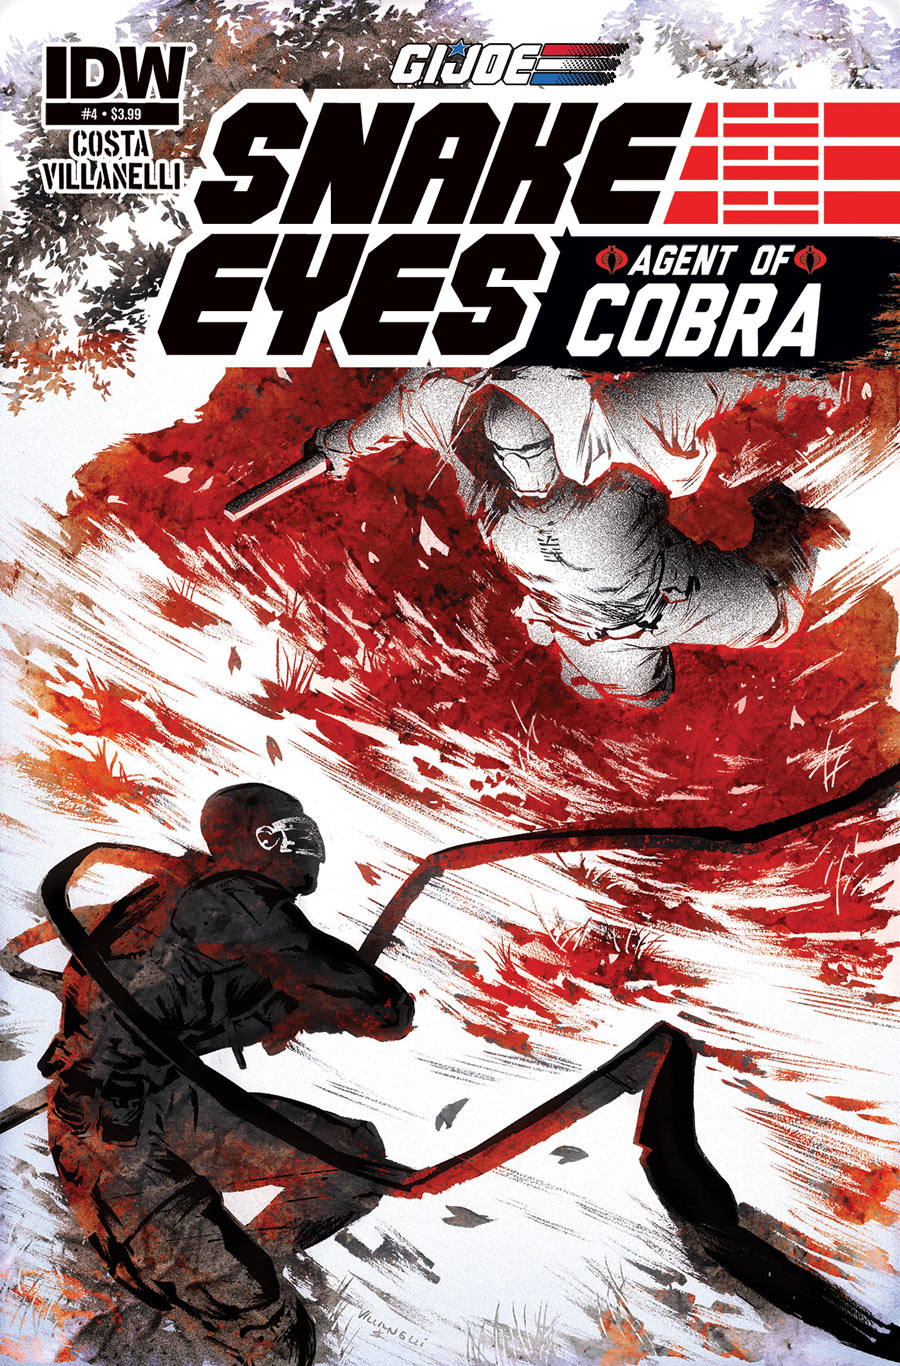 G.I Joe: Snake Eyes: Agent of Cobra #4 Review